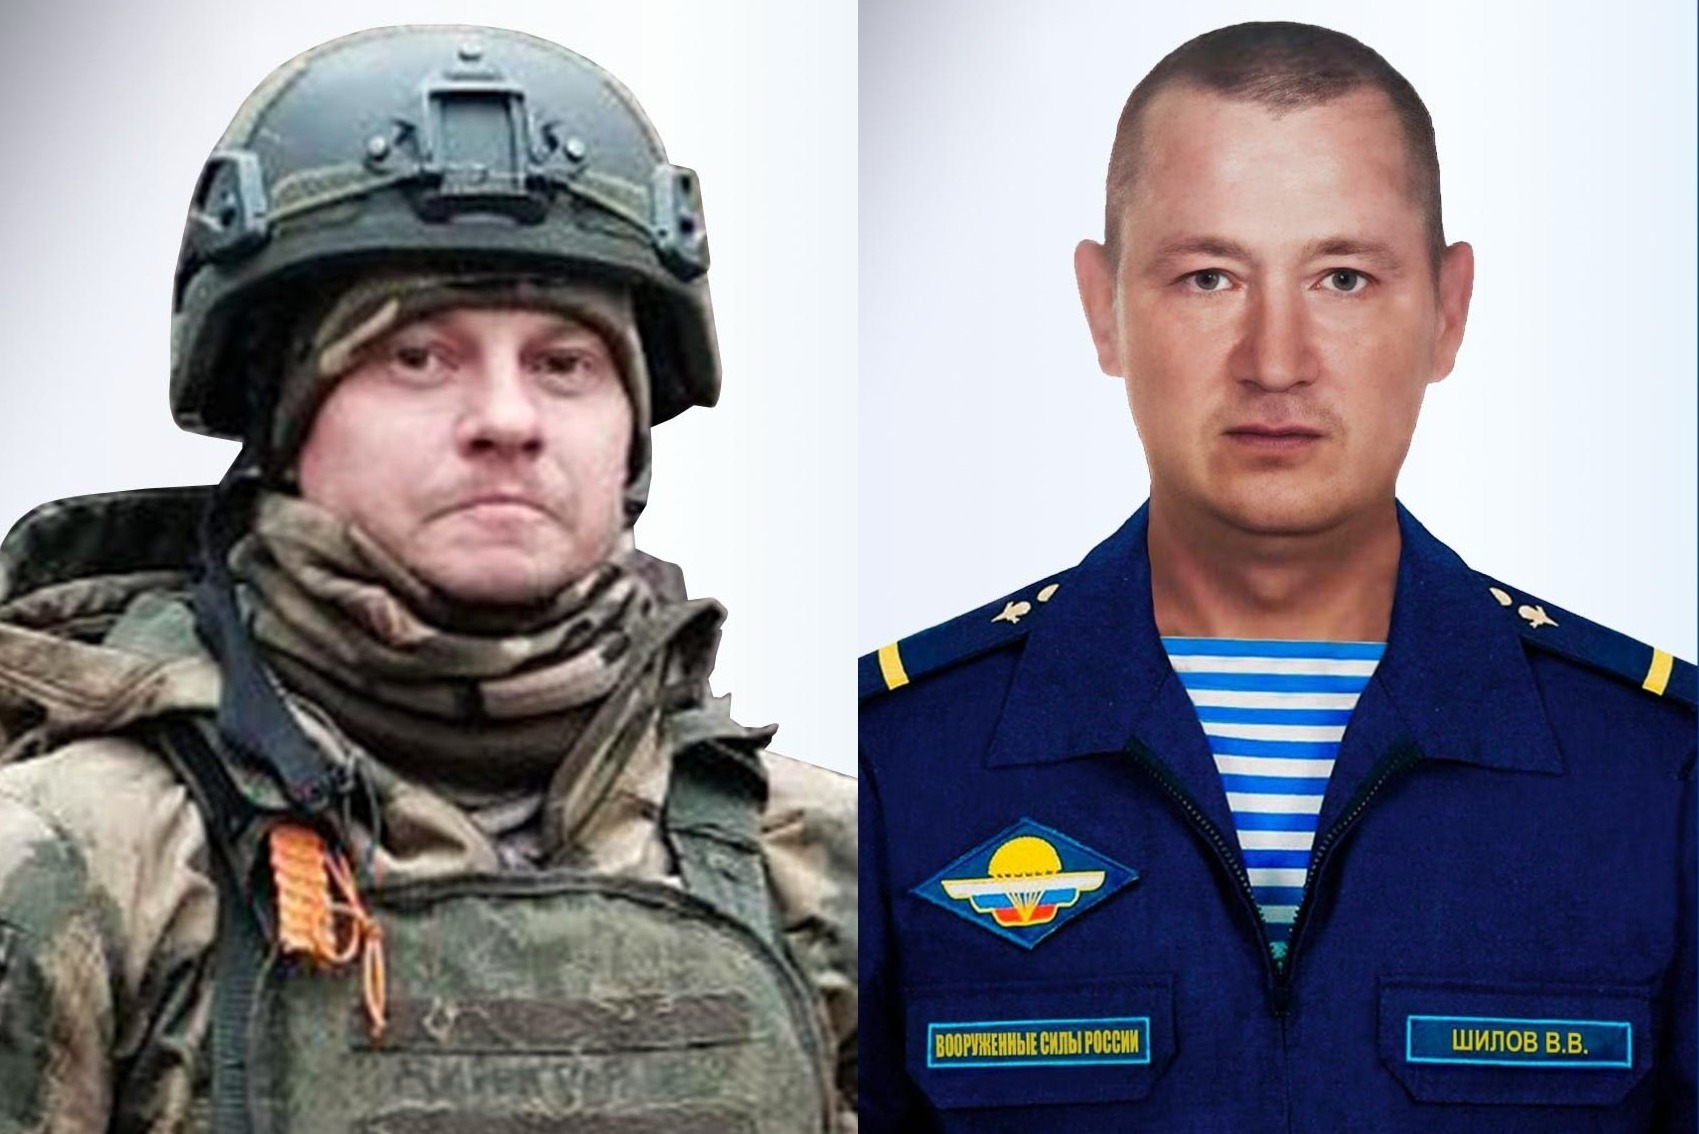 В зоне СВО погибли военнослужащие Александр Степанов и Владимир Шилов из Ивановской области